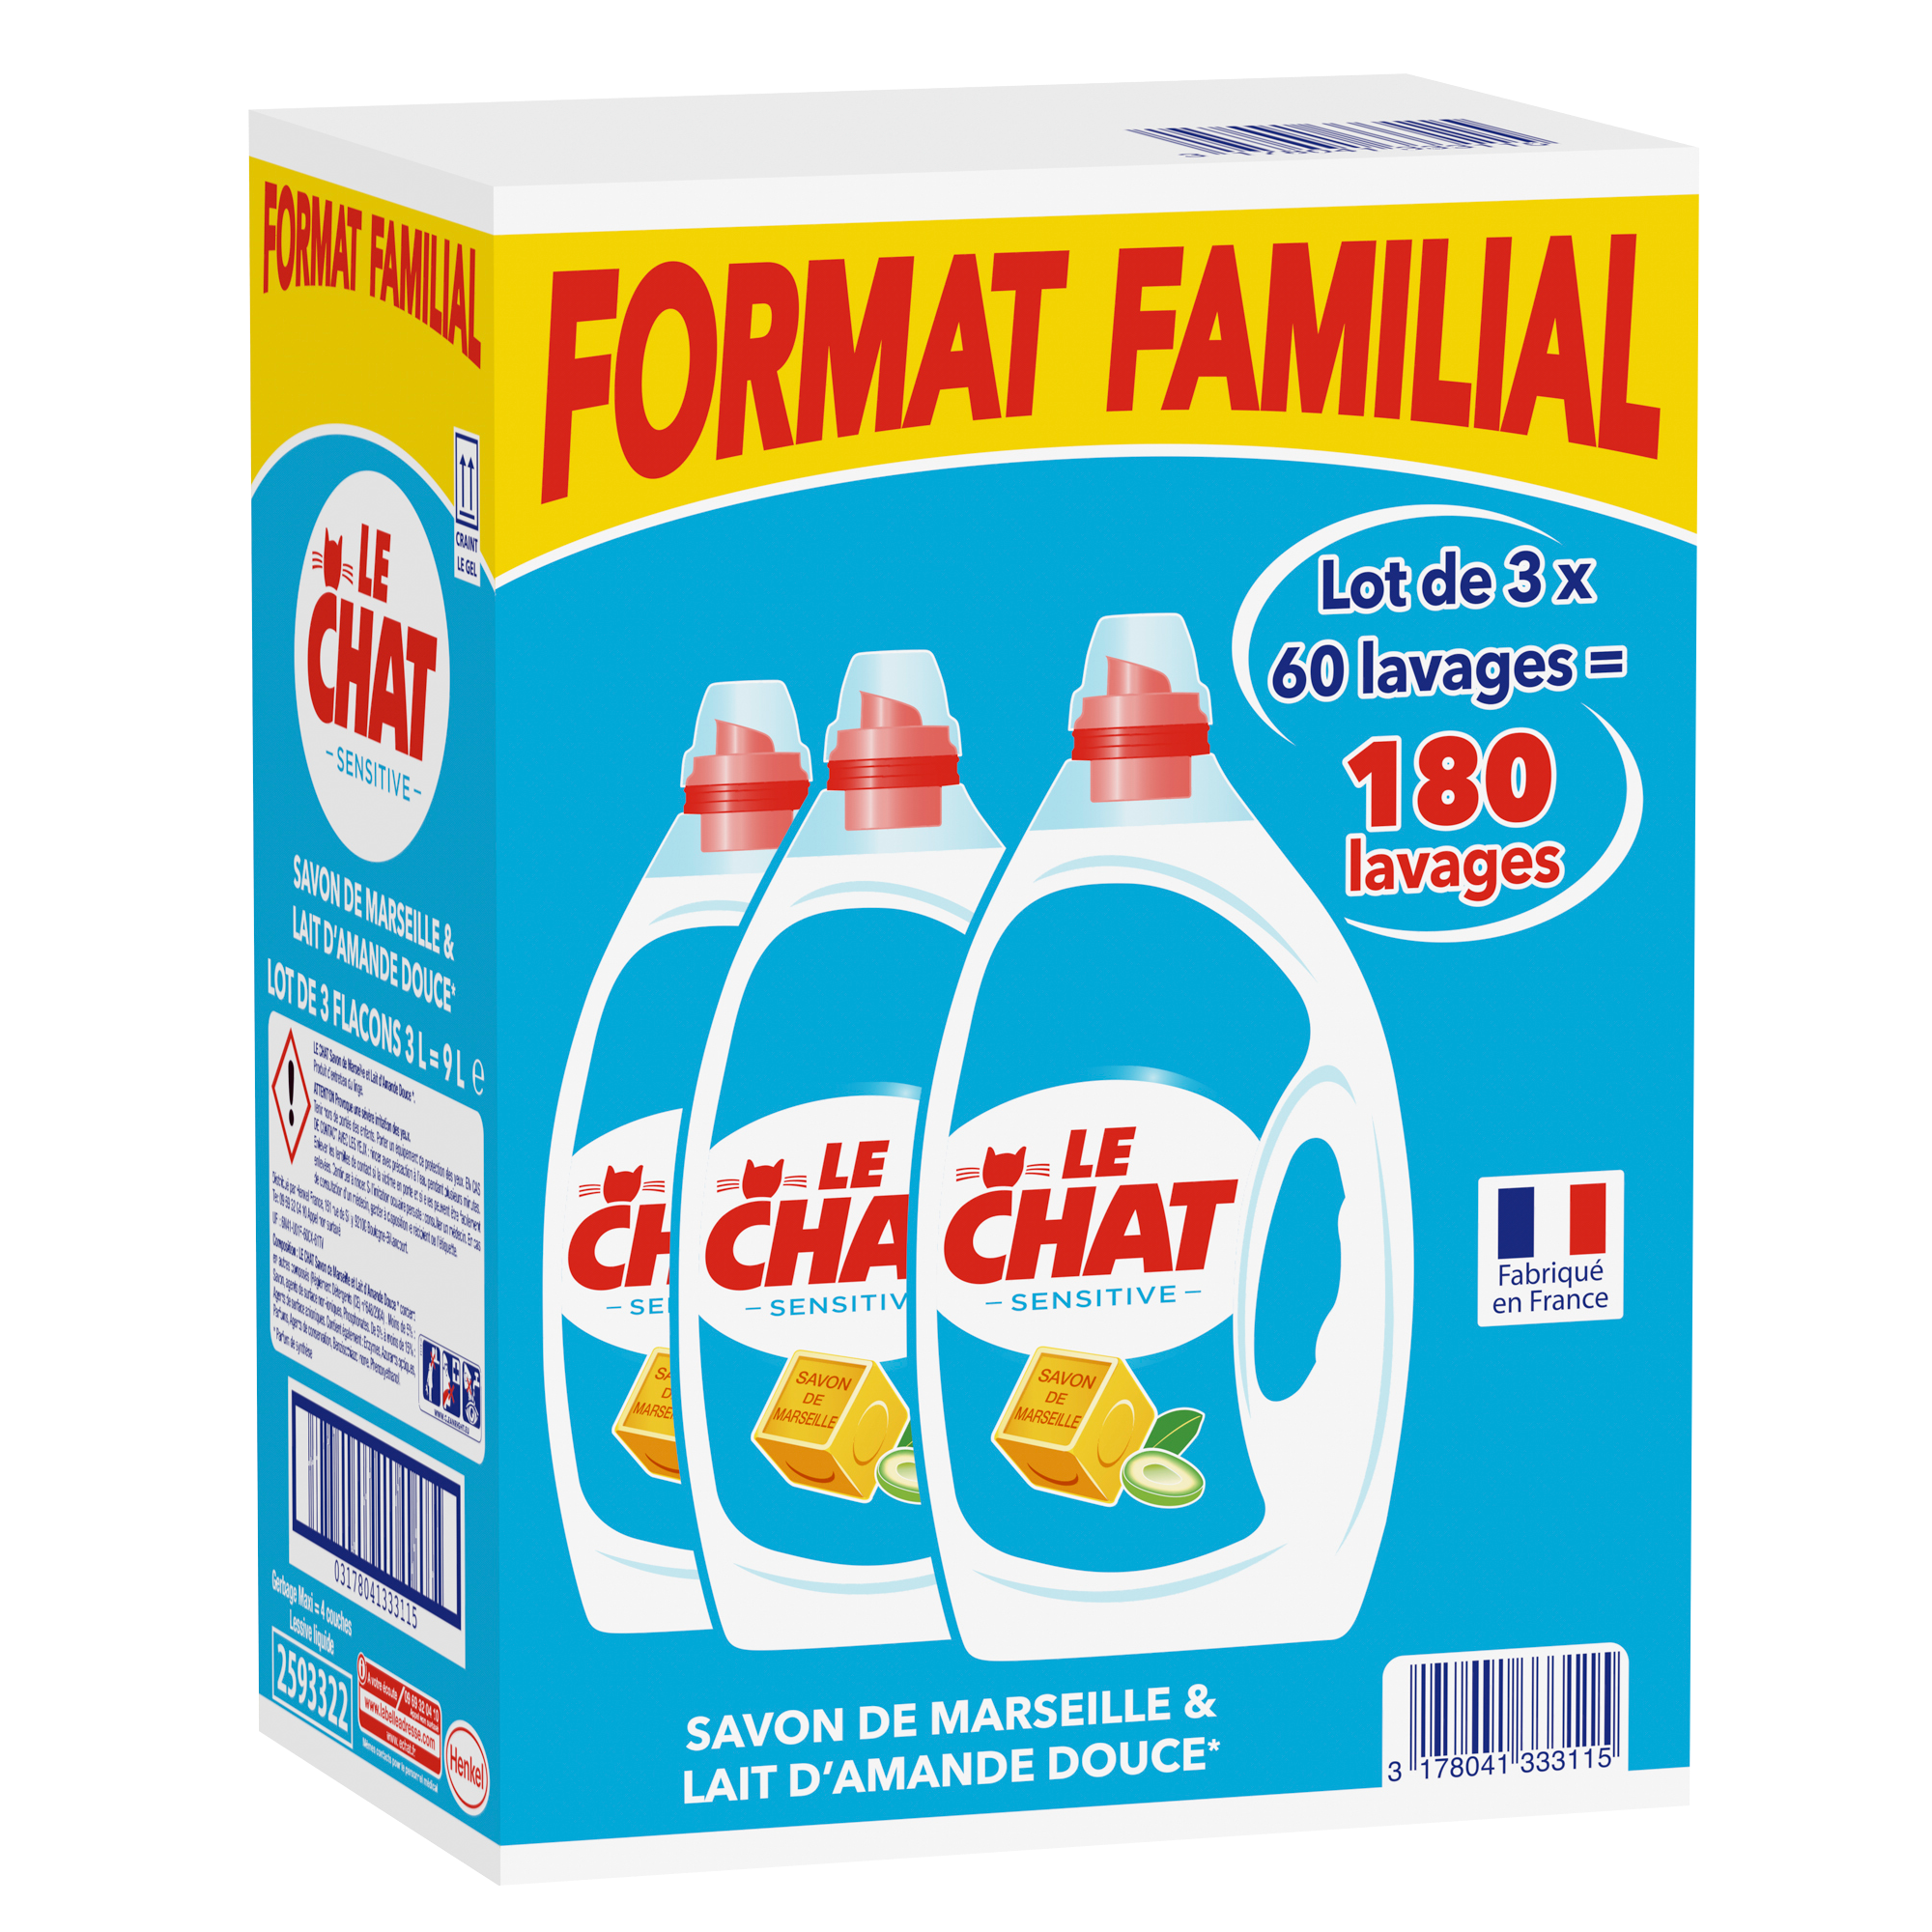 Le Chat Sensitive 3x3l Format Familial Sensitive Le Chat Shoptimise